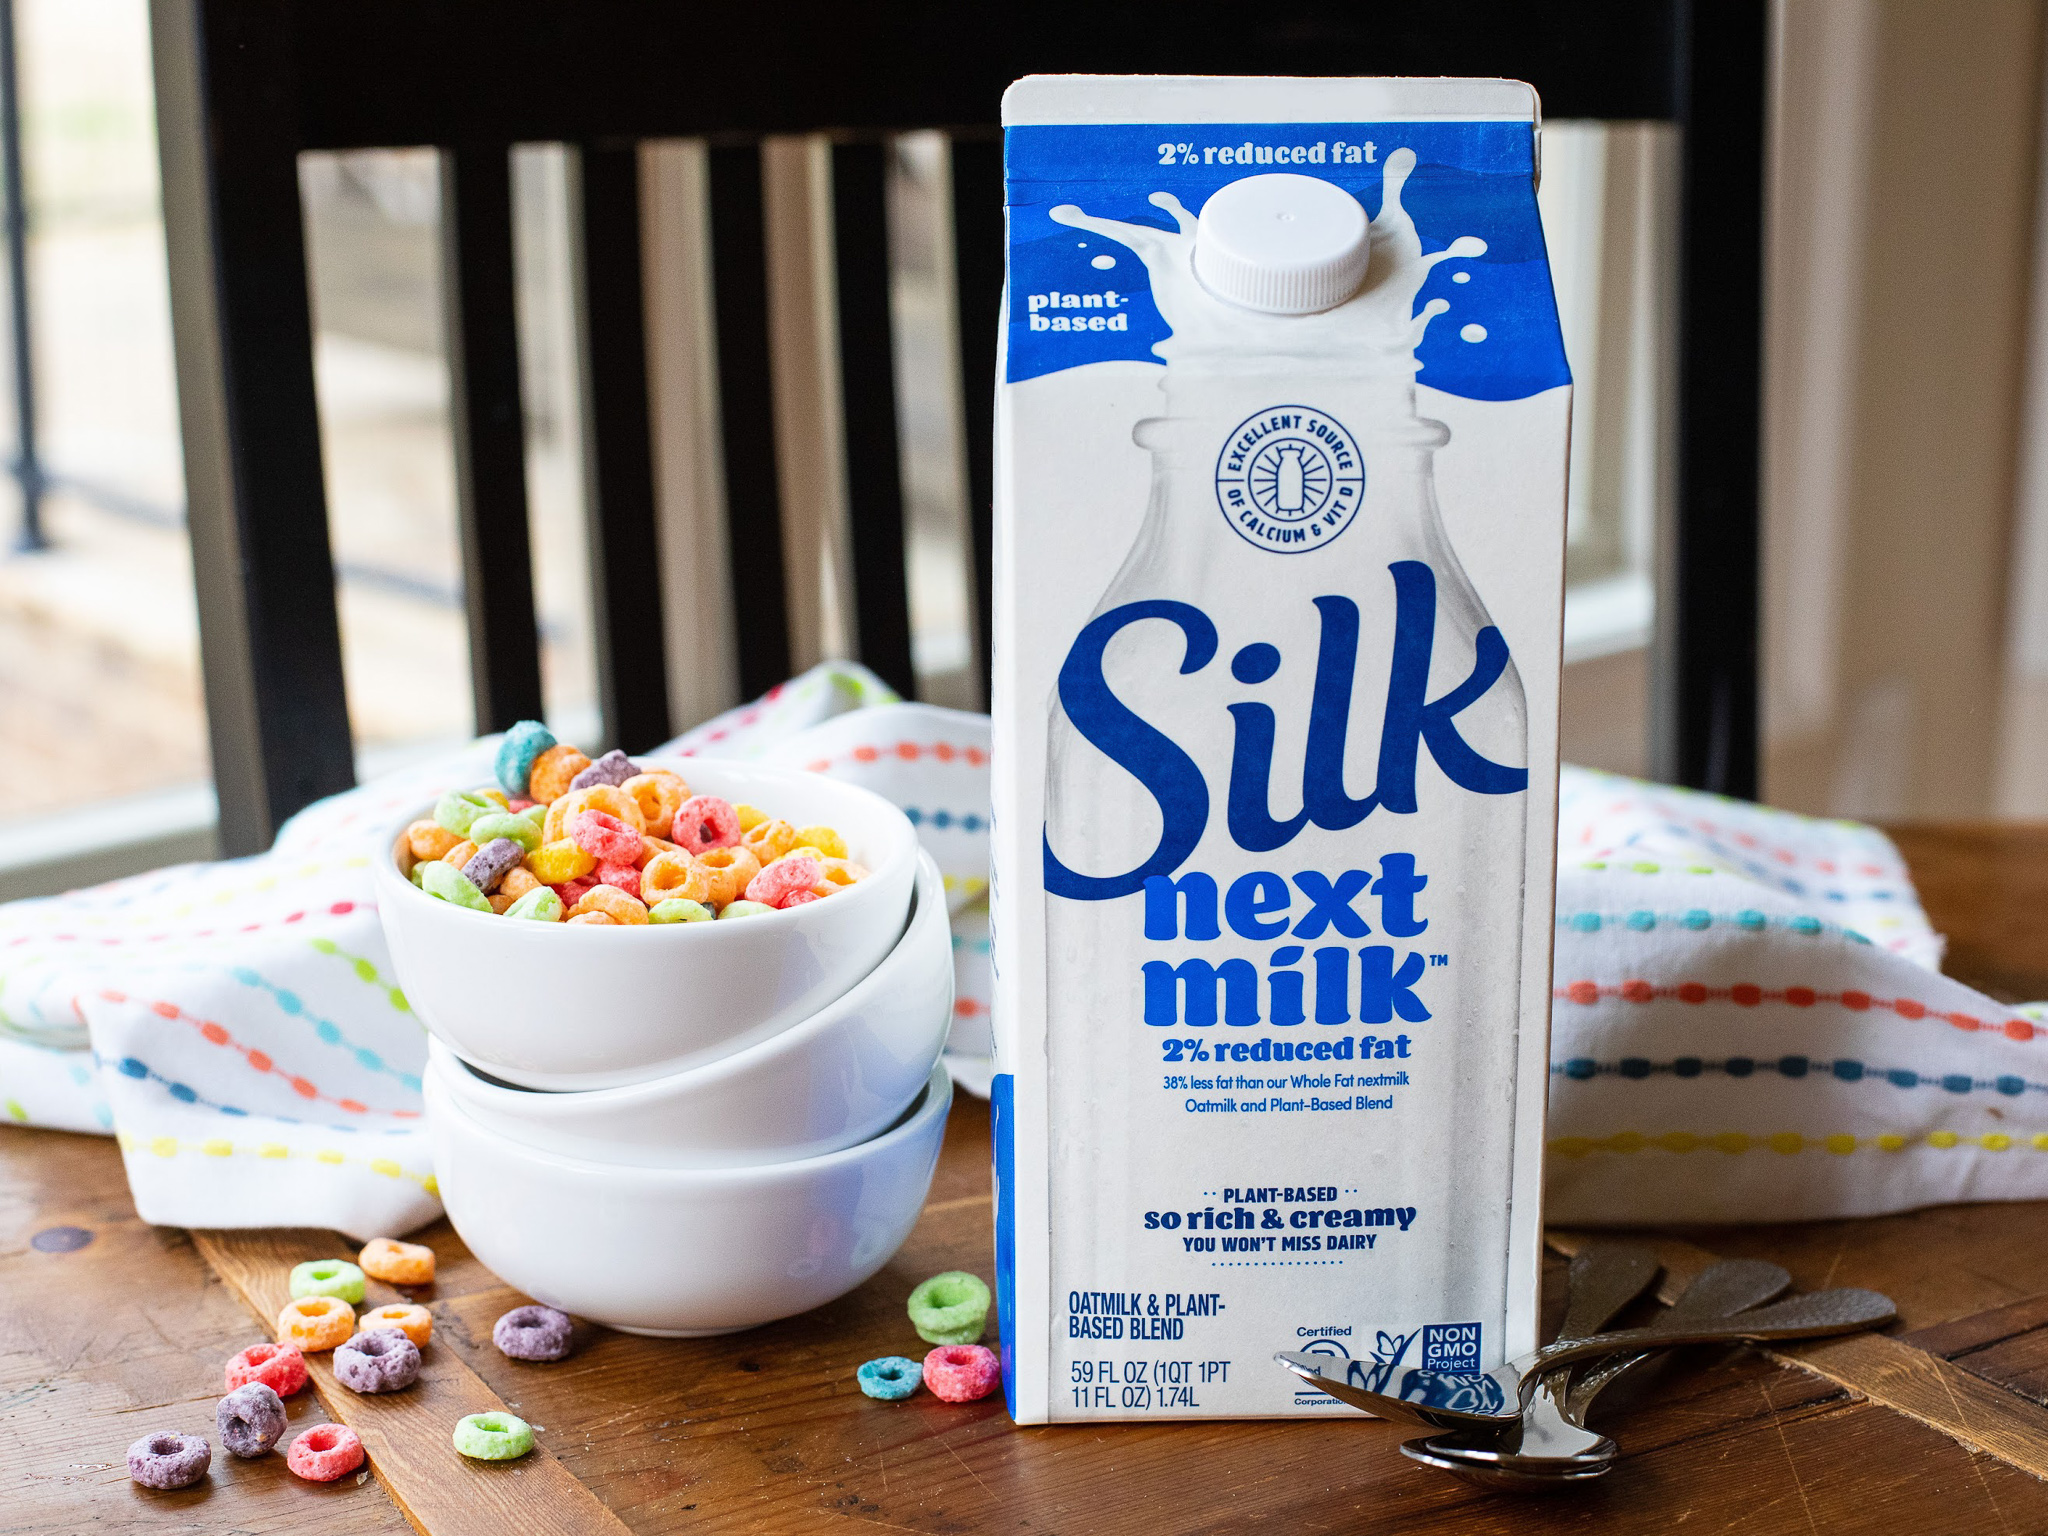 Get Silk Nextmilk For Just $3.79 At Kroger (Regular Price $5.49)